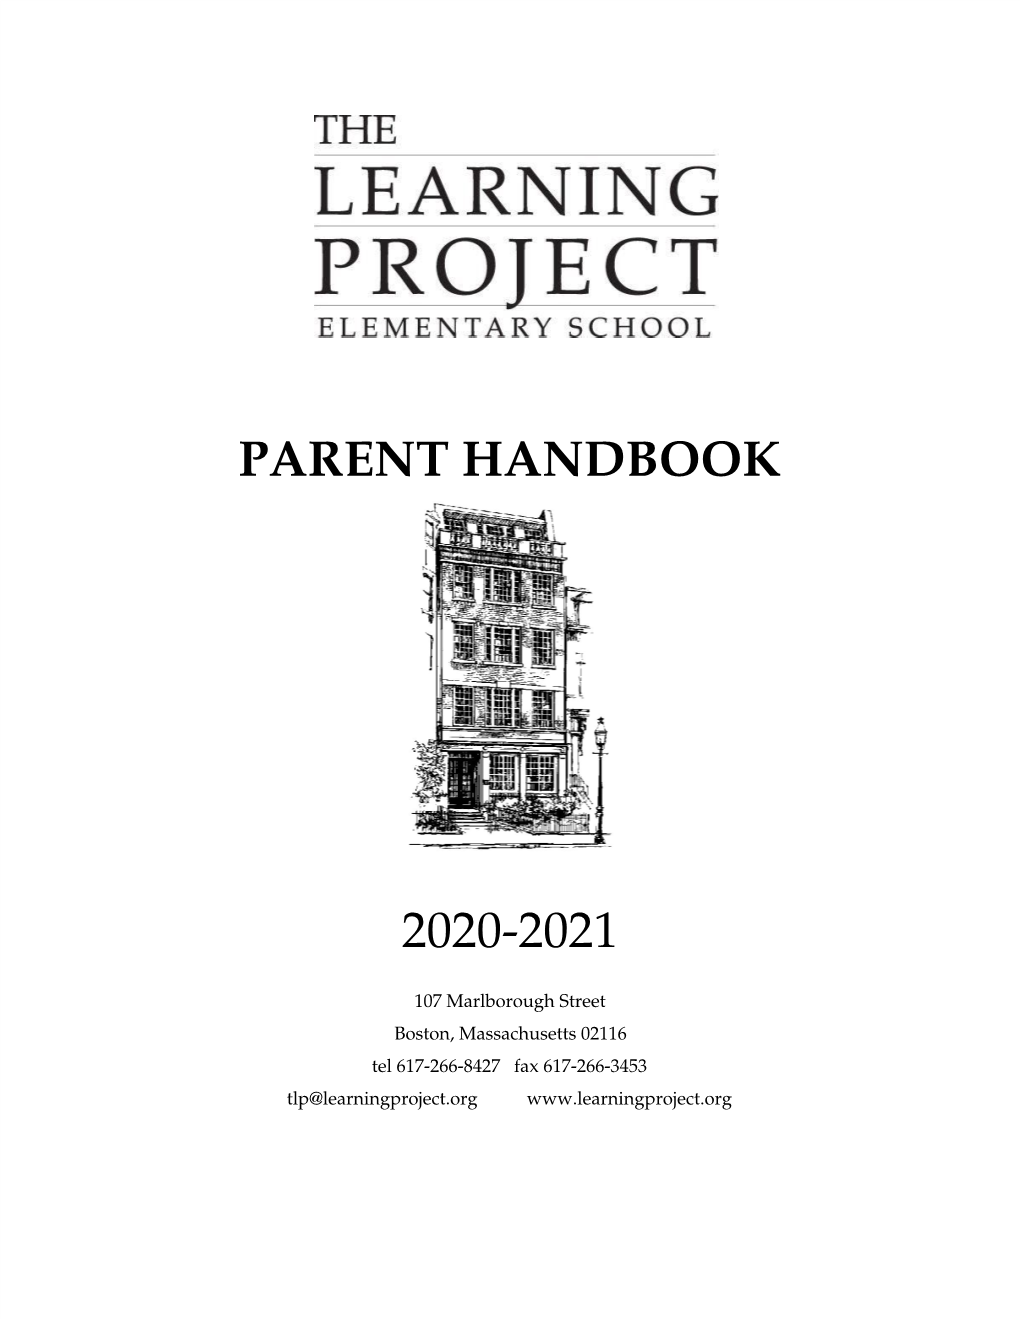 Parent Handbook 2020-2021